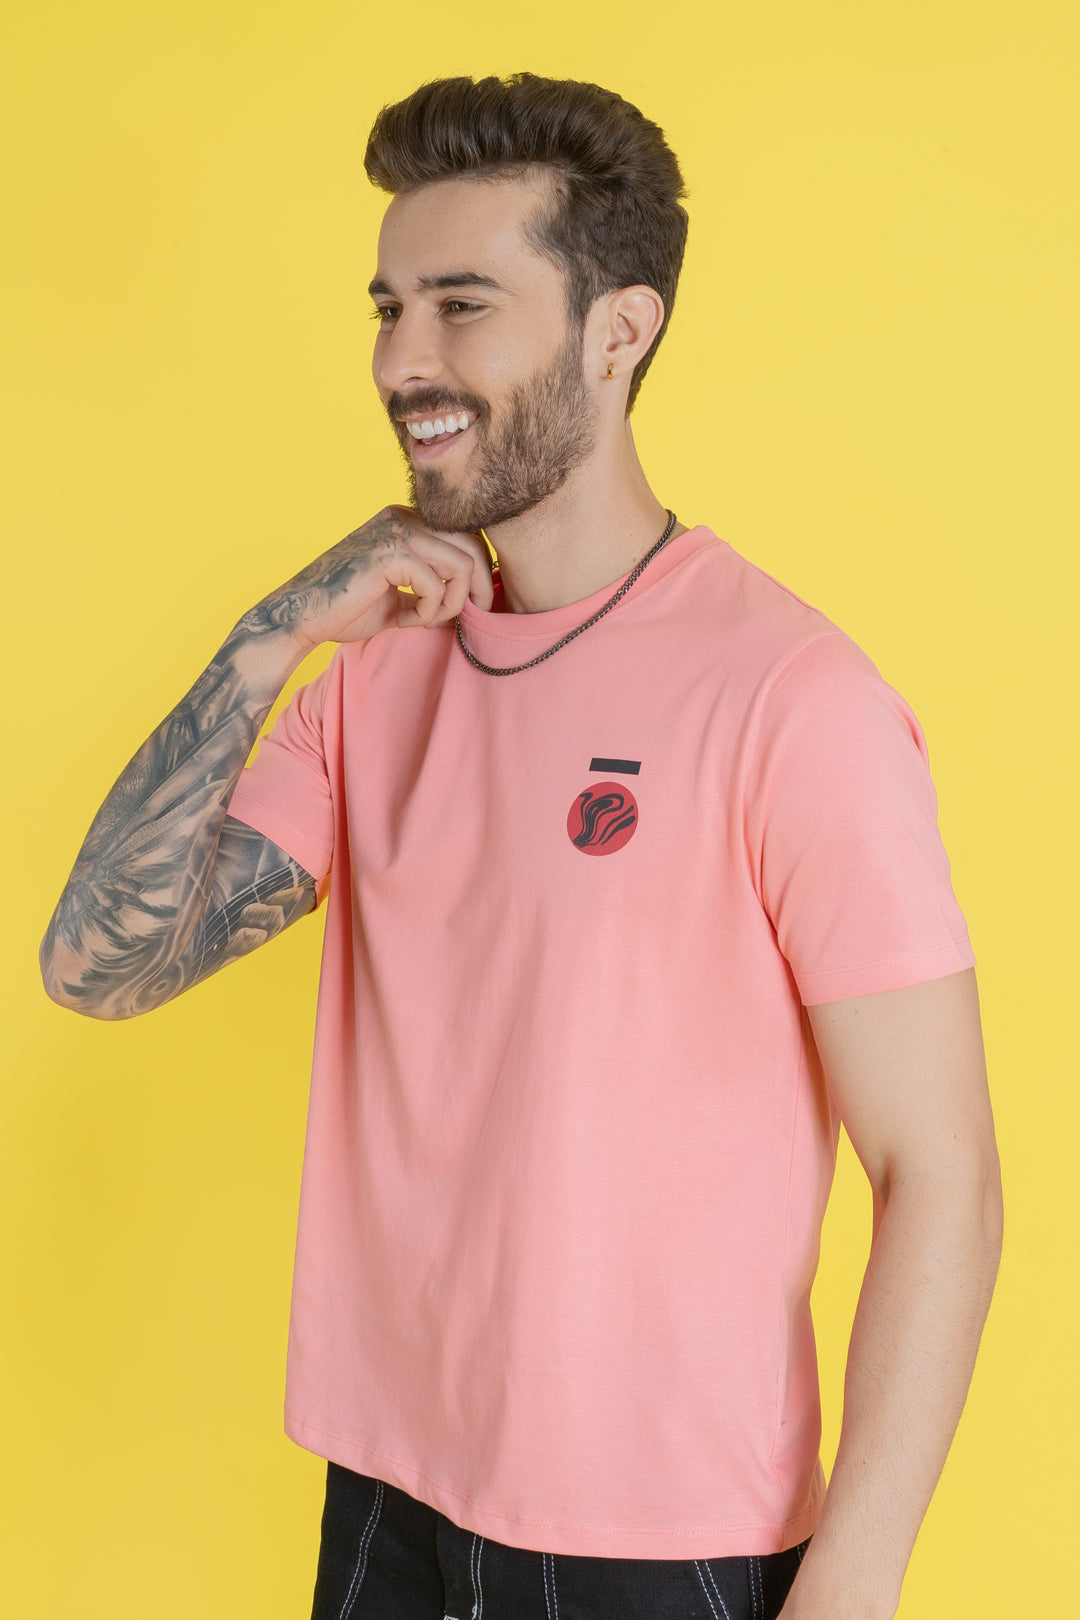 Men's Printed Salmon Pink T-Shirt - Regular Fit, Round Neck Cotton Tee